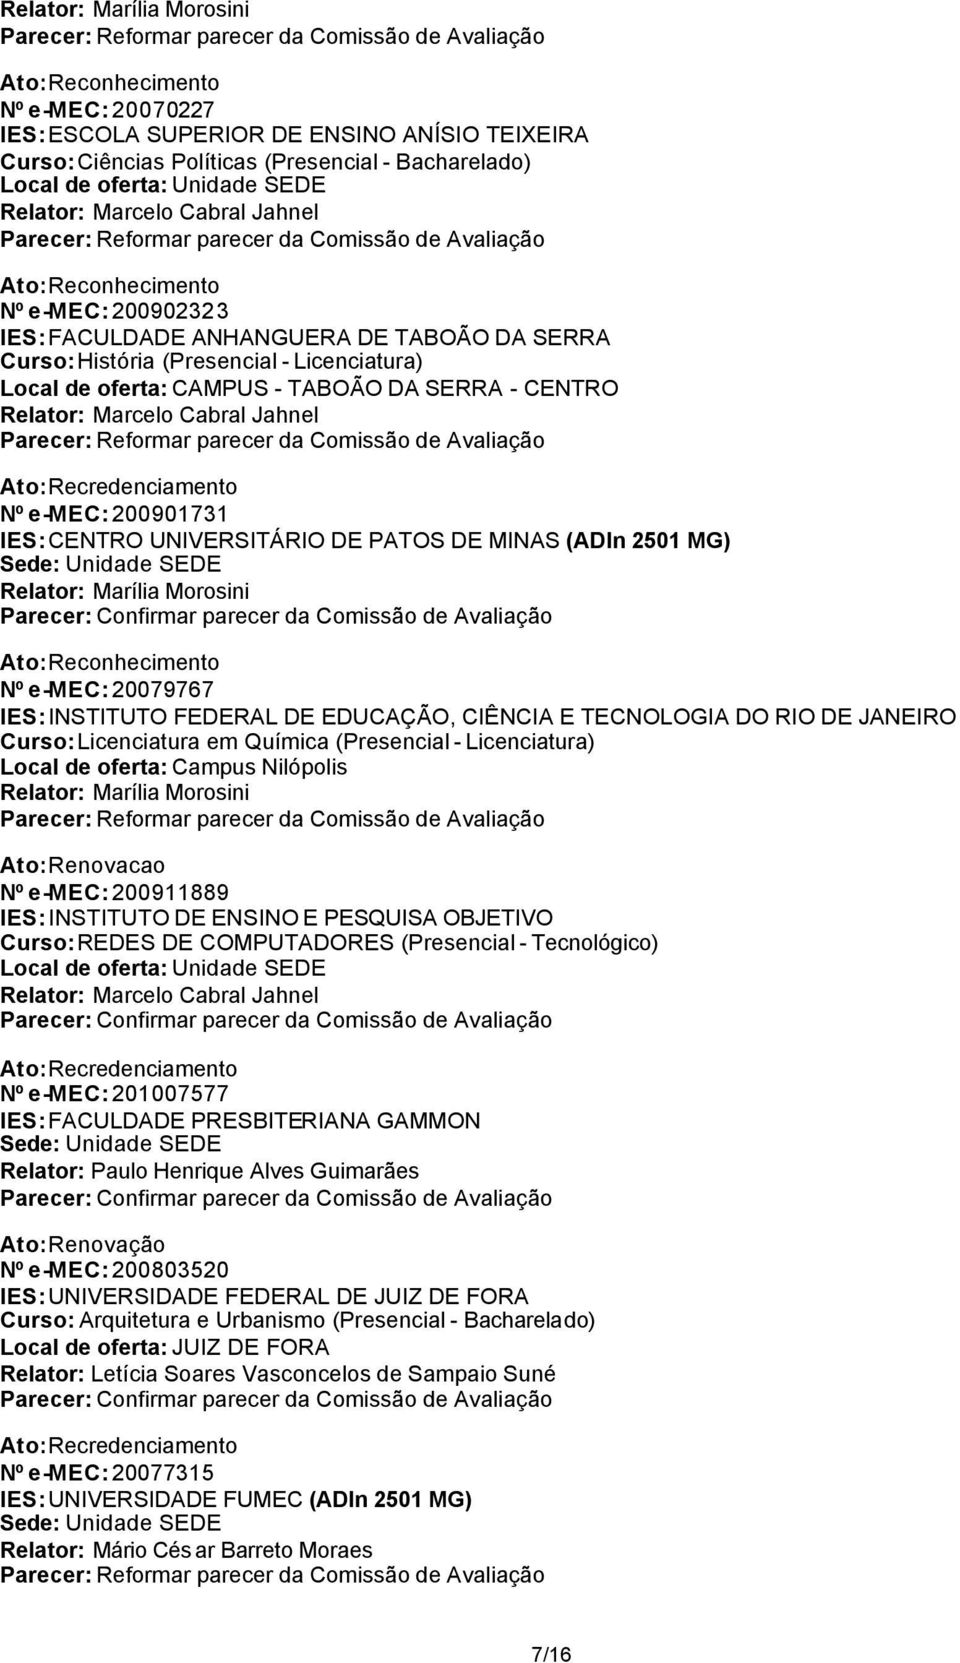 CENTRO UNIVERSITÁRIO DE PATOS DE MINAS (ADIn 2501 MG) Relator: Marília Morosini Nº e-mec: 20079767 IES: INSTITUTO FEDERAL DE EDUCAÇÃO, CIÊNCIA E TECNOLOGIA DO RIO DE JANEIRO Curso: Licenciatura em